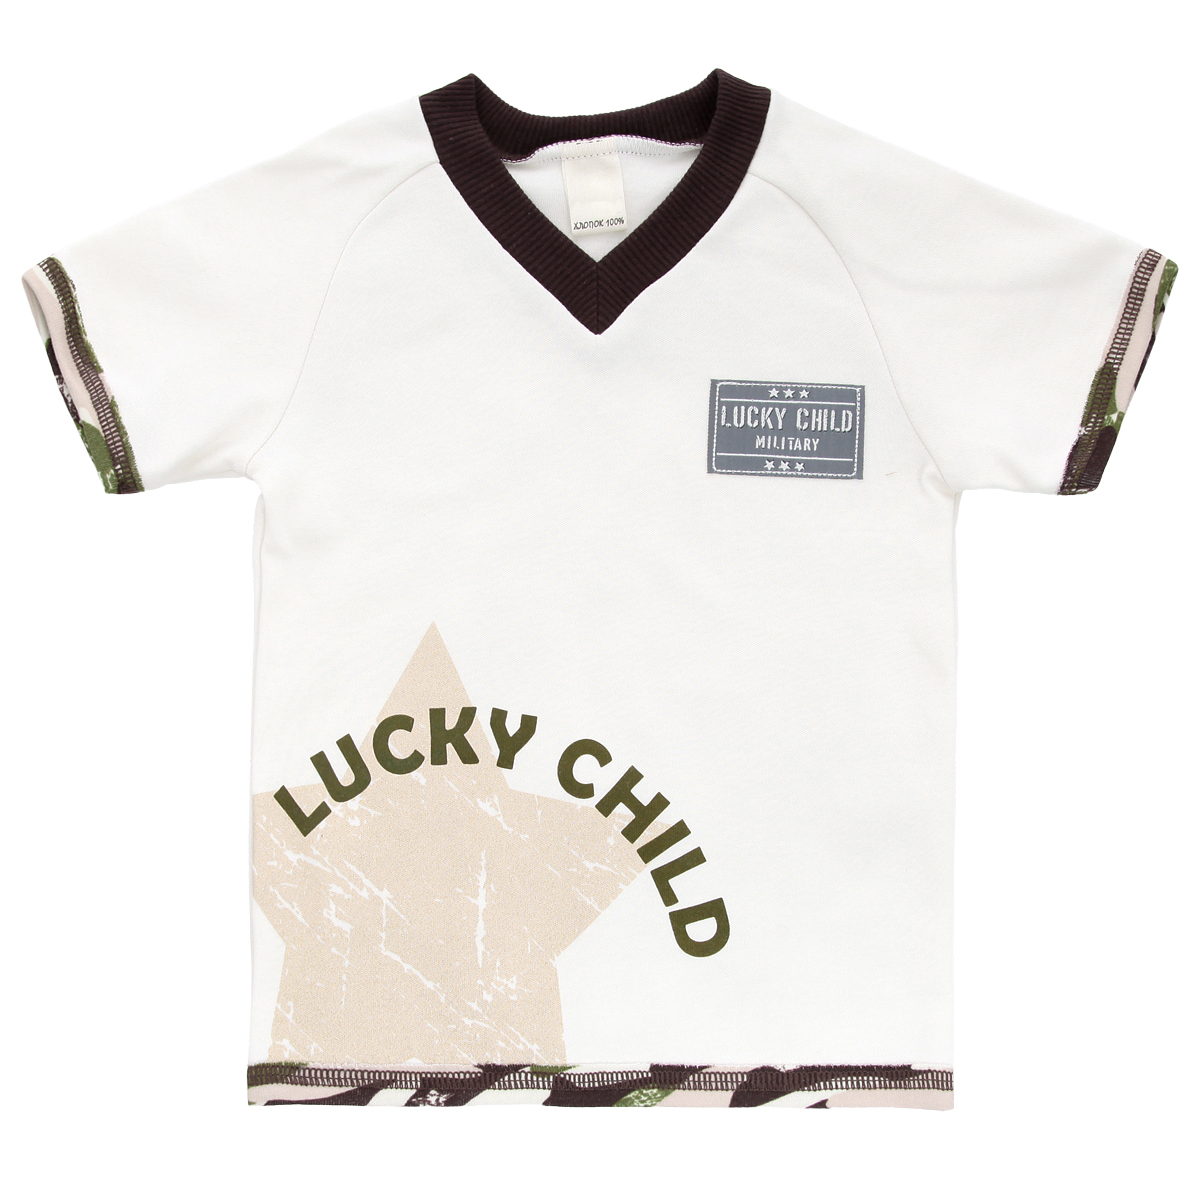 Футболка для мальчика Lucky Child Вежливые люди, цвет: светло-бежевый, темно-коричневый, зеленый. 31-262. Размер 68/74